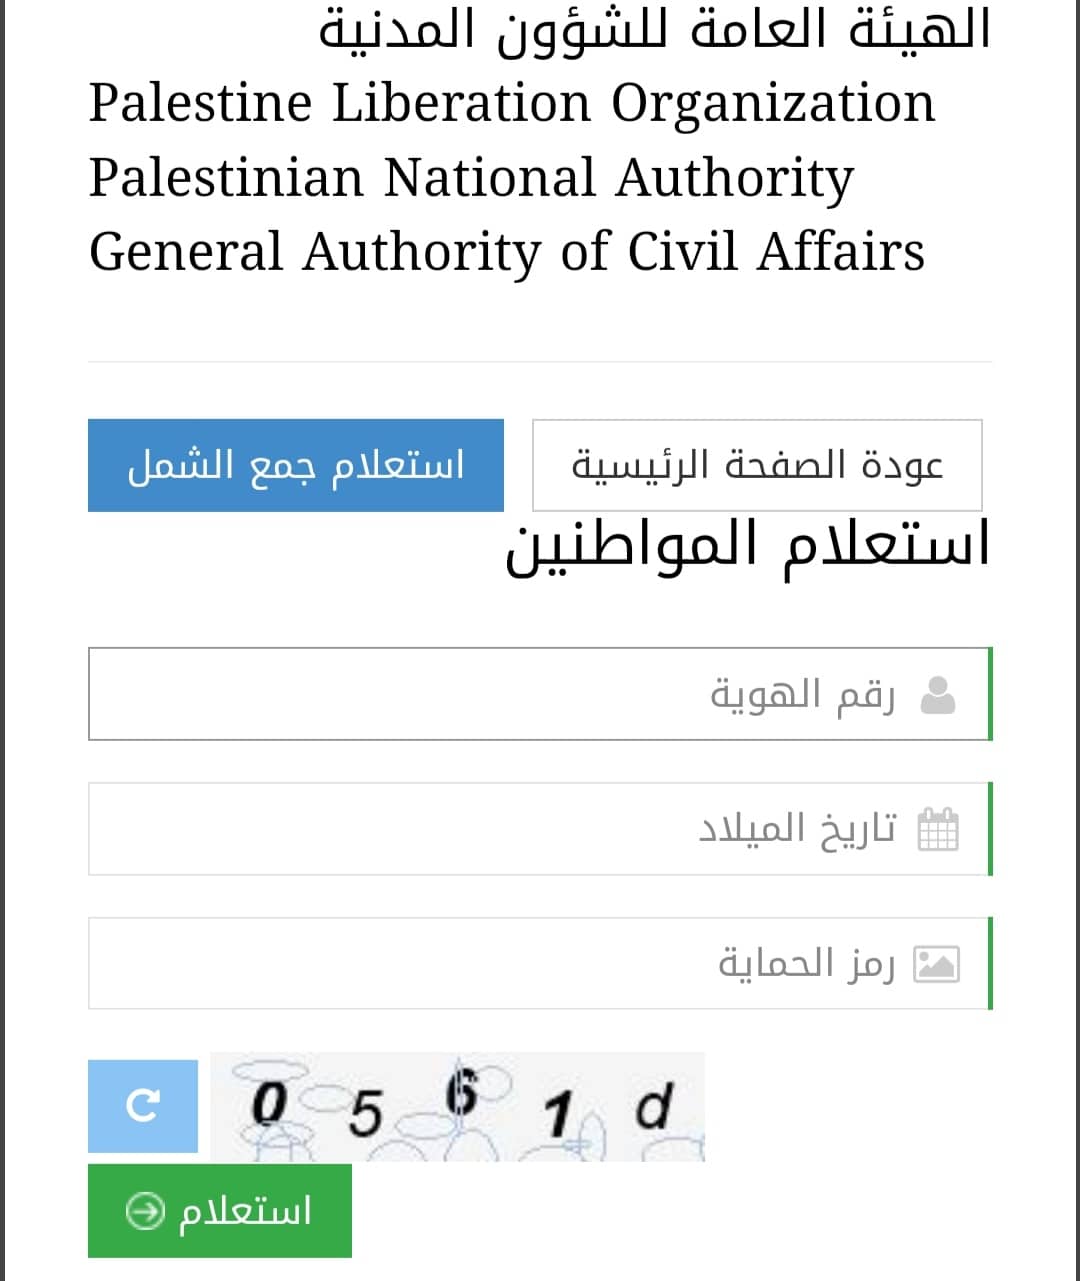  الهوية رابط فحص تصاريح العمل في اسرائيل عبر الشؤون المدنية الكشف الجديد - 24 News